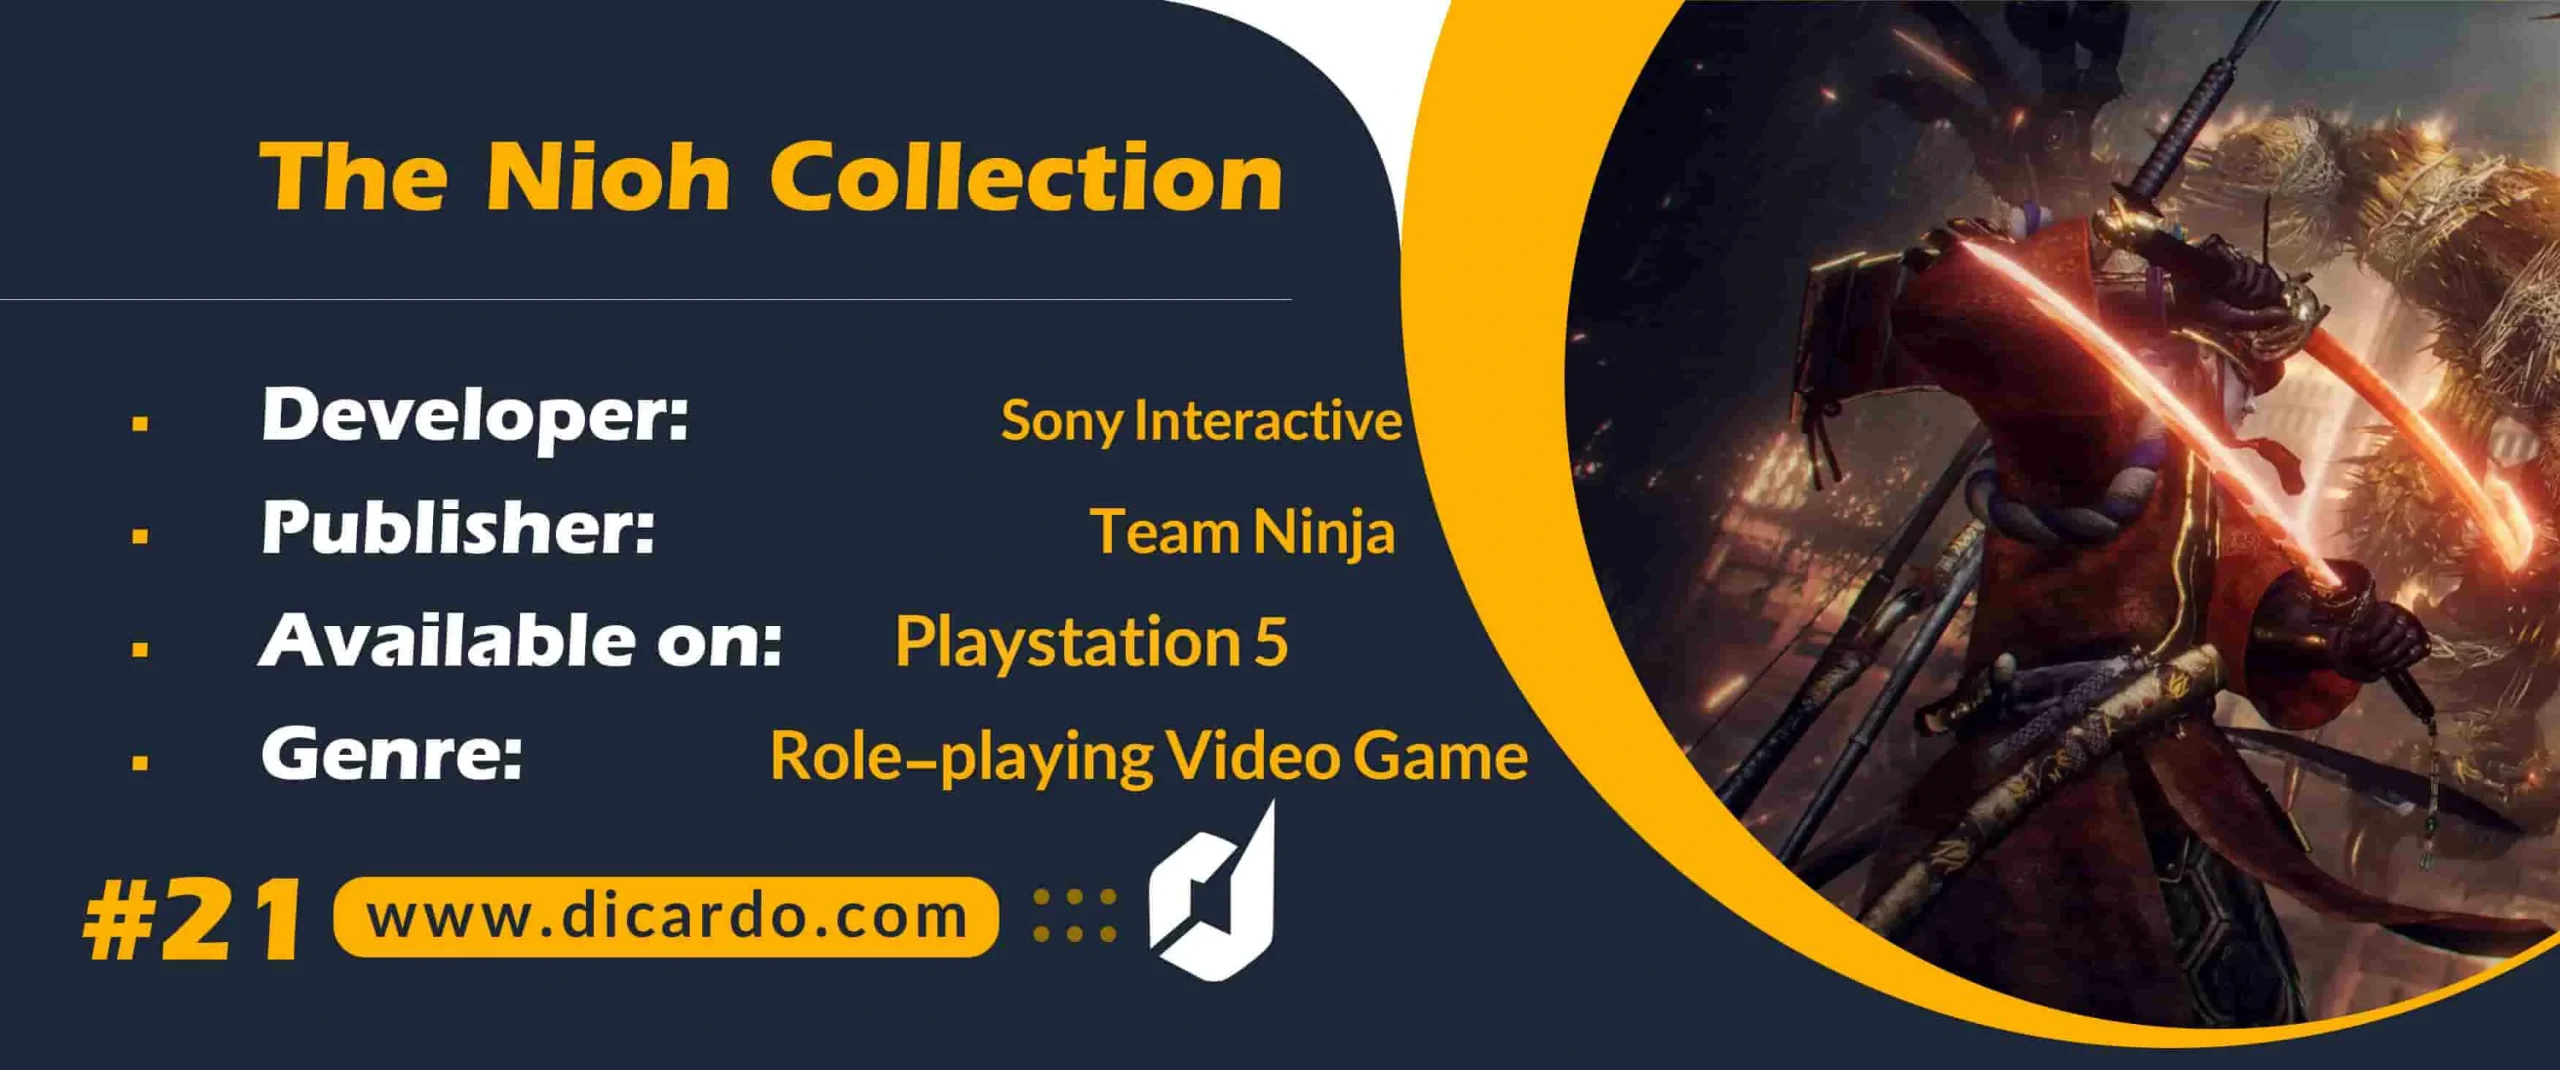 #21 د نیو کالکشن The Nioh Collection از بهترین بازیهای پلی استیشن 5 با سیستم مبارزات سخت و چالشی